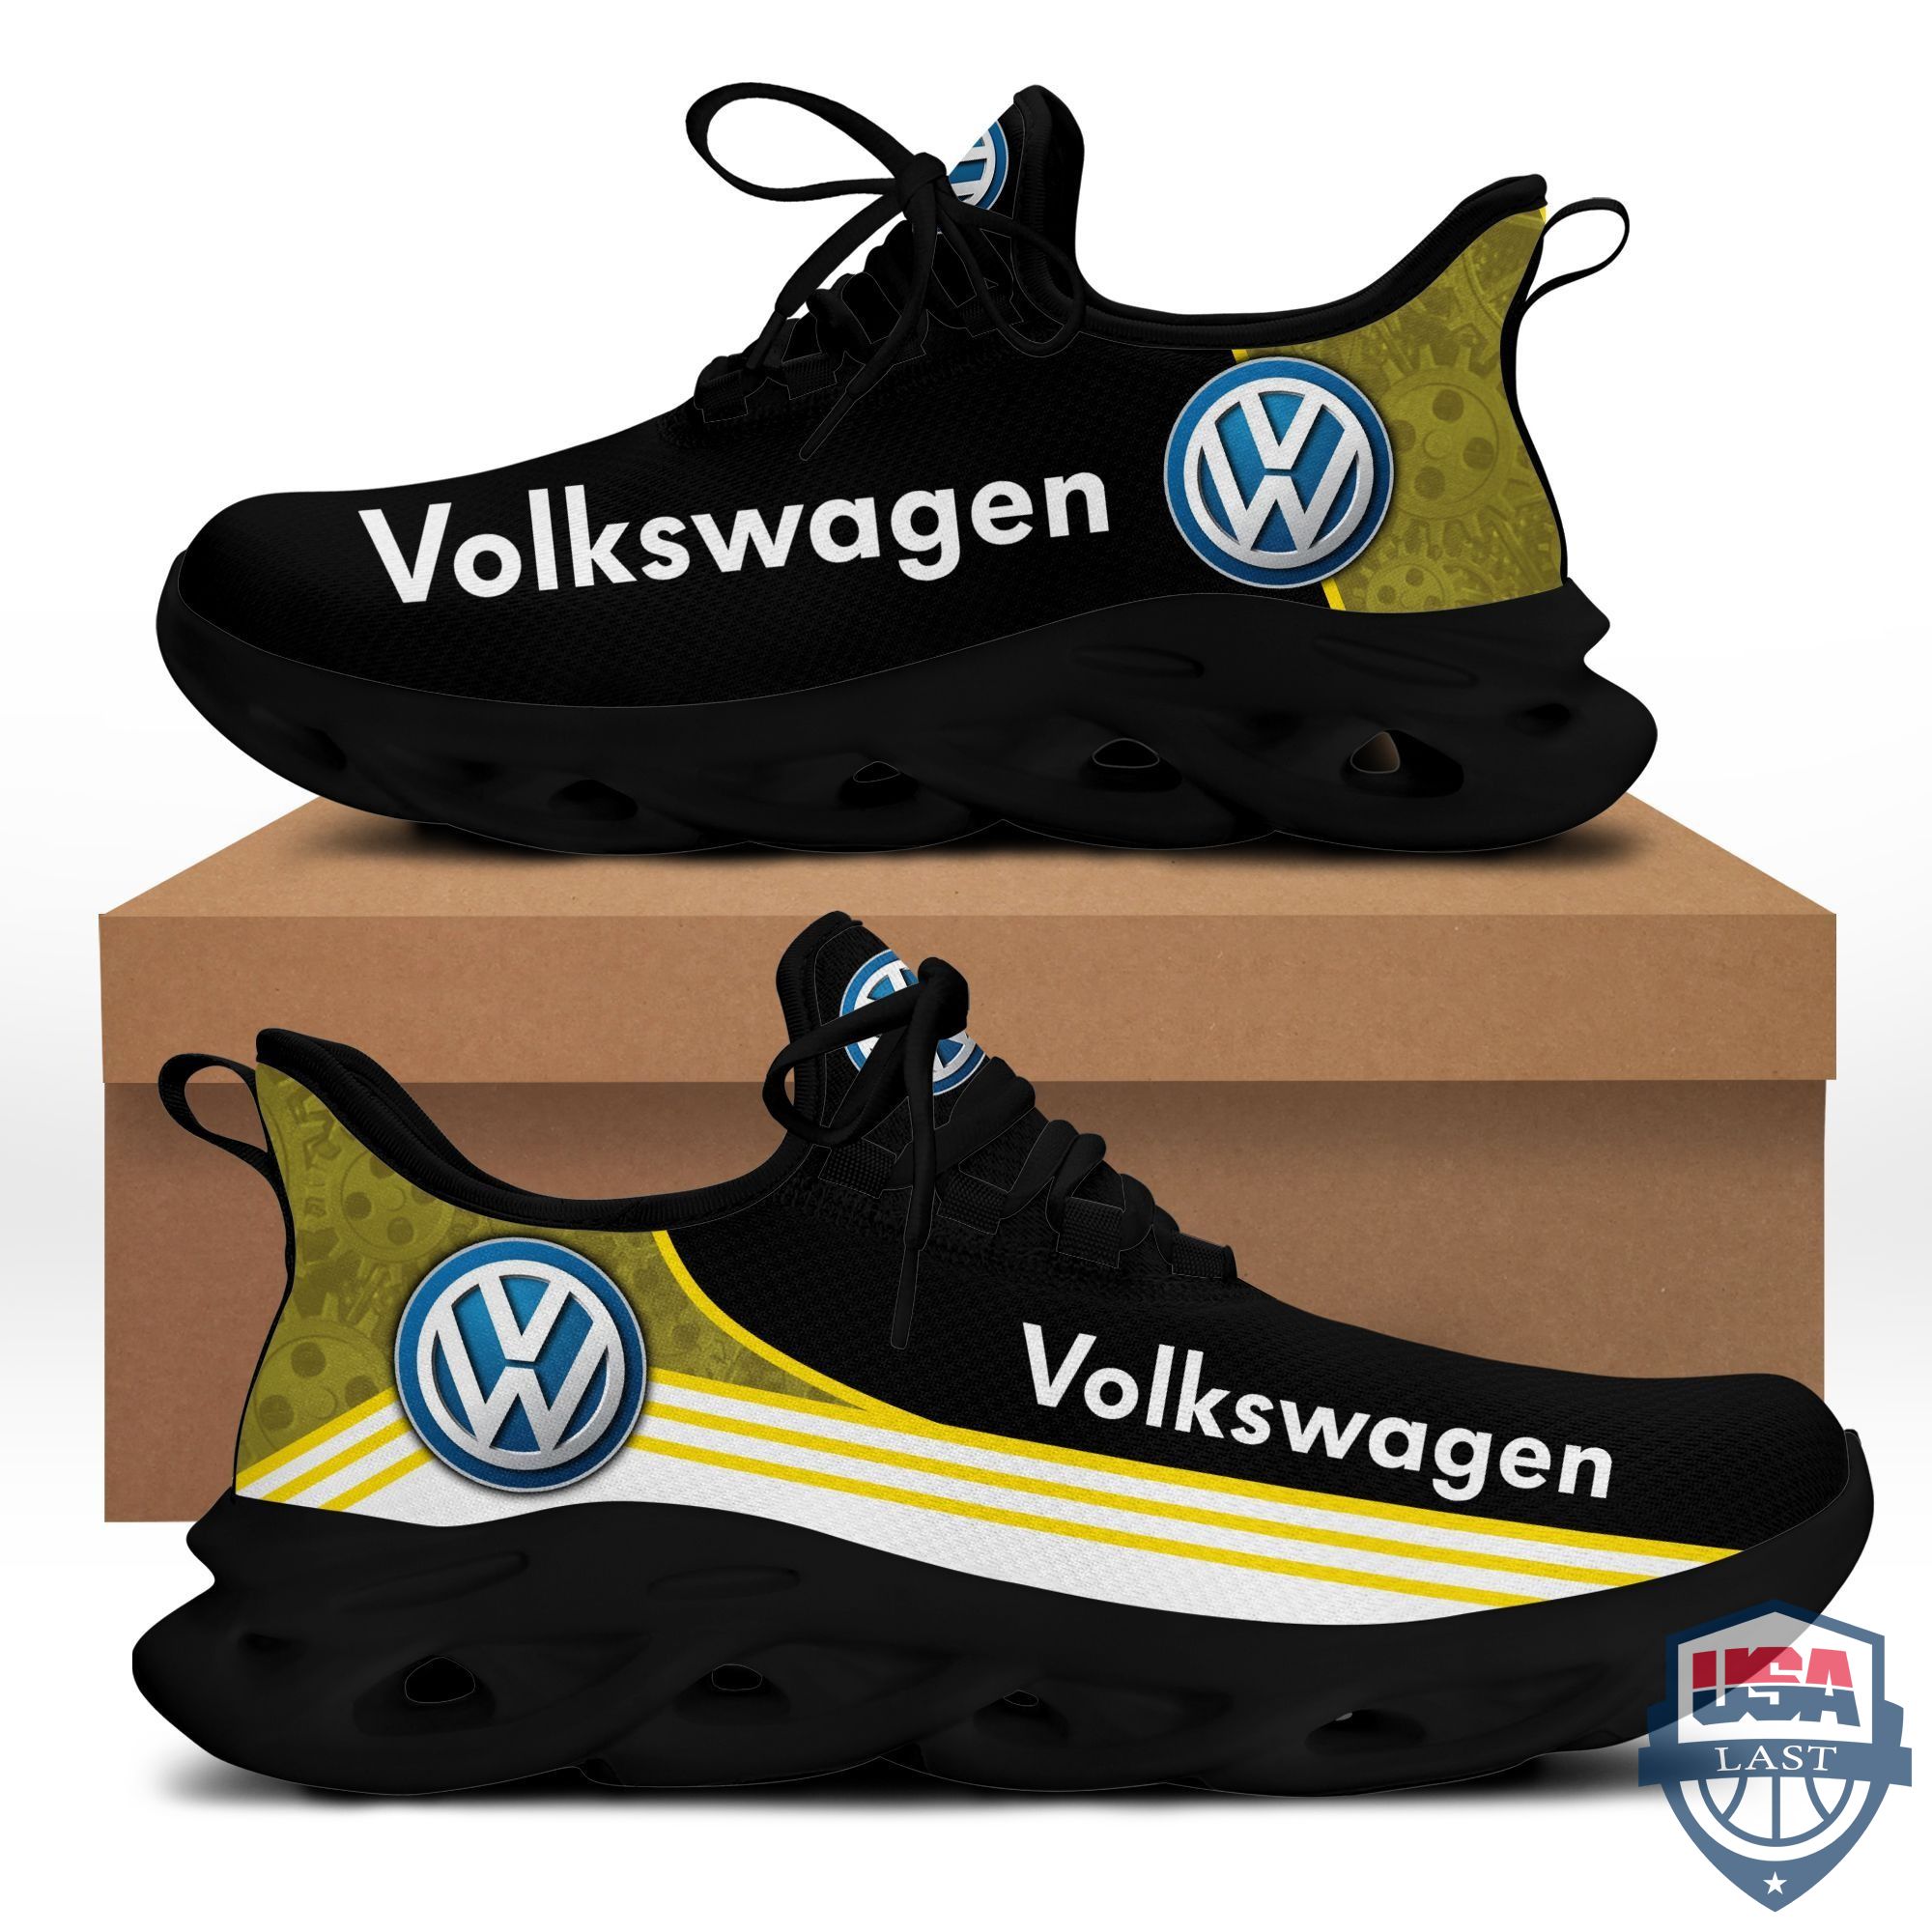 Volkswagen Max Soul Sport Sneakers Yellow Version